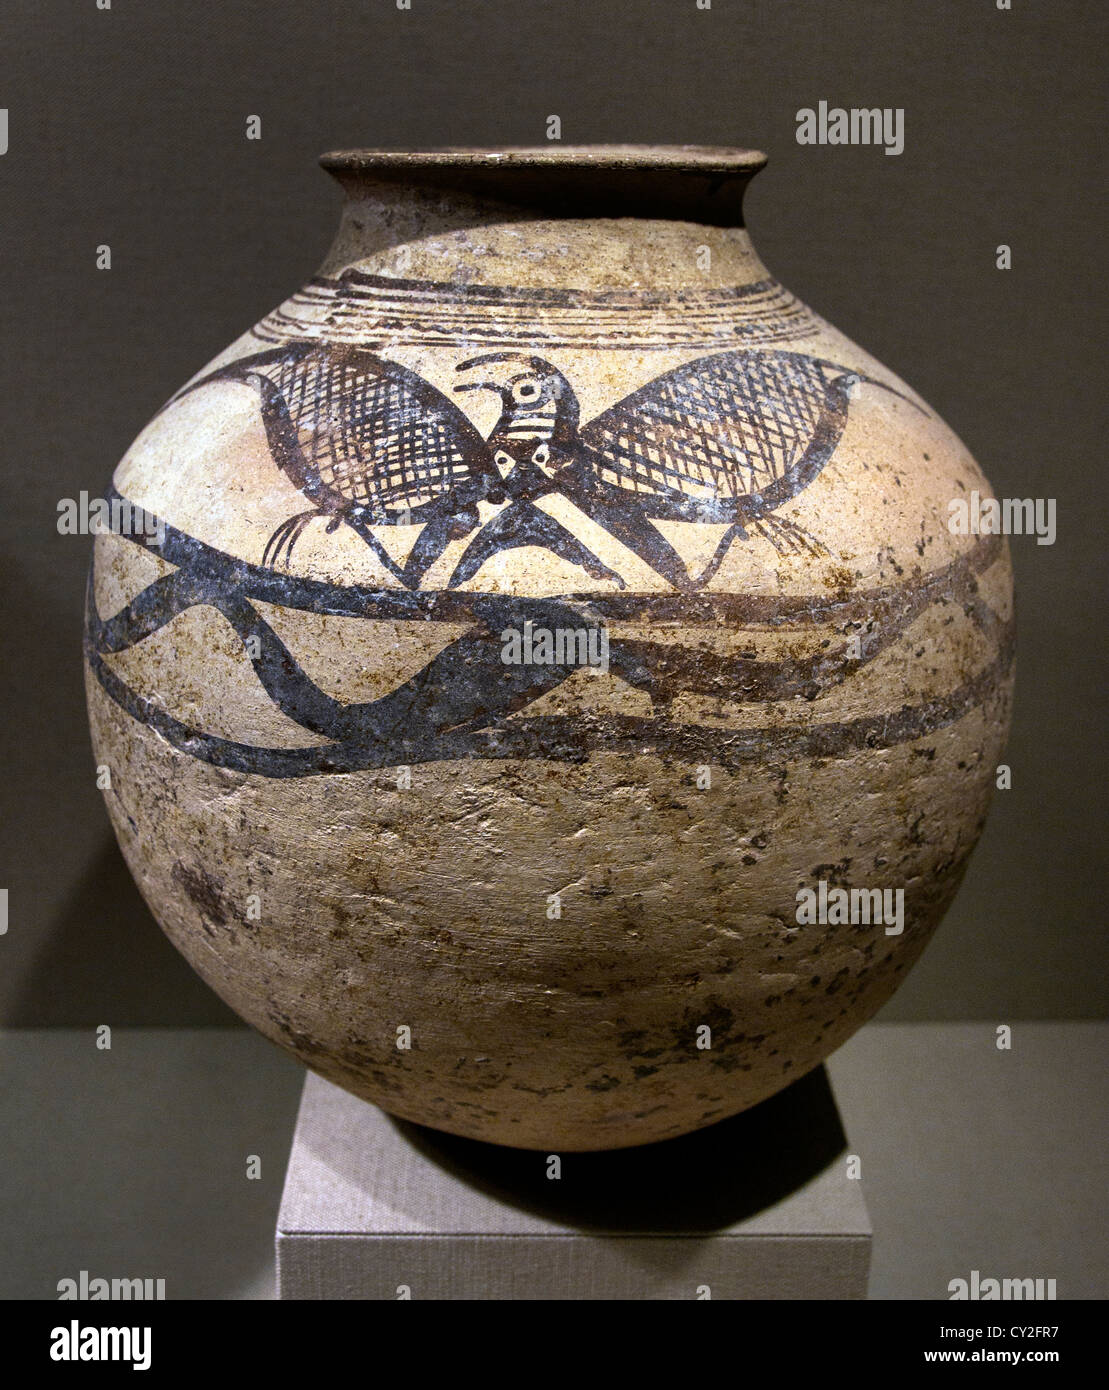 Frasco con el águila pintada a principios de la Edad de Bronce 2500-1900 A.C. El Irán occidental cerámica cerámica de 30 cm Foto de stock